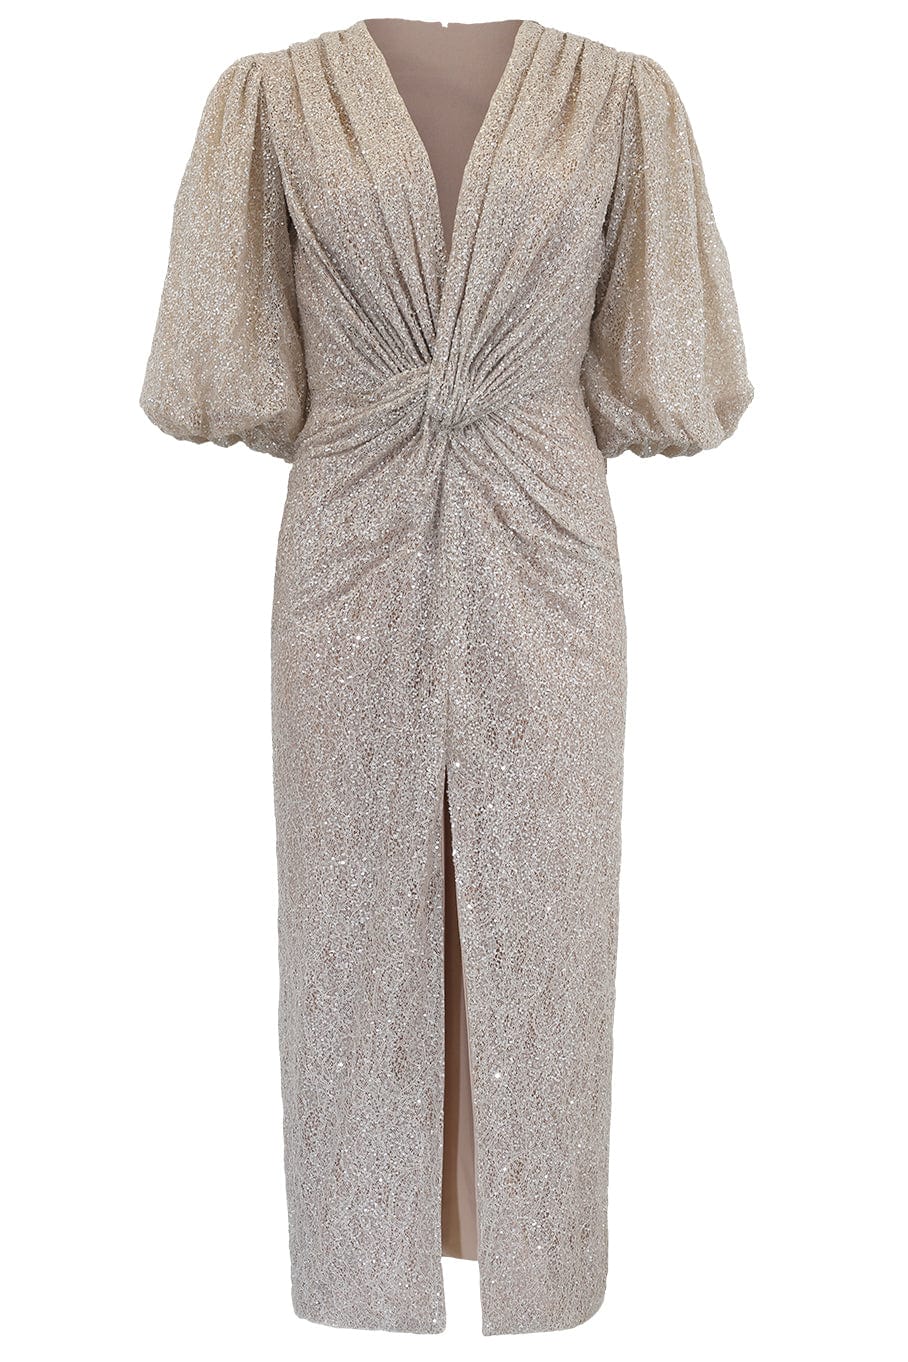 Laria Sequin Column Dress CLOTHINGDRESSCASUAL COSTARELLOS   